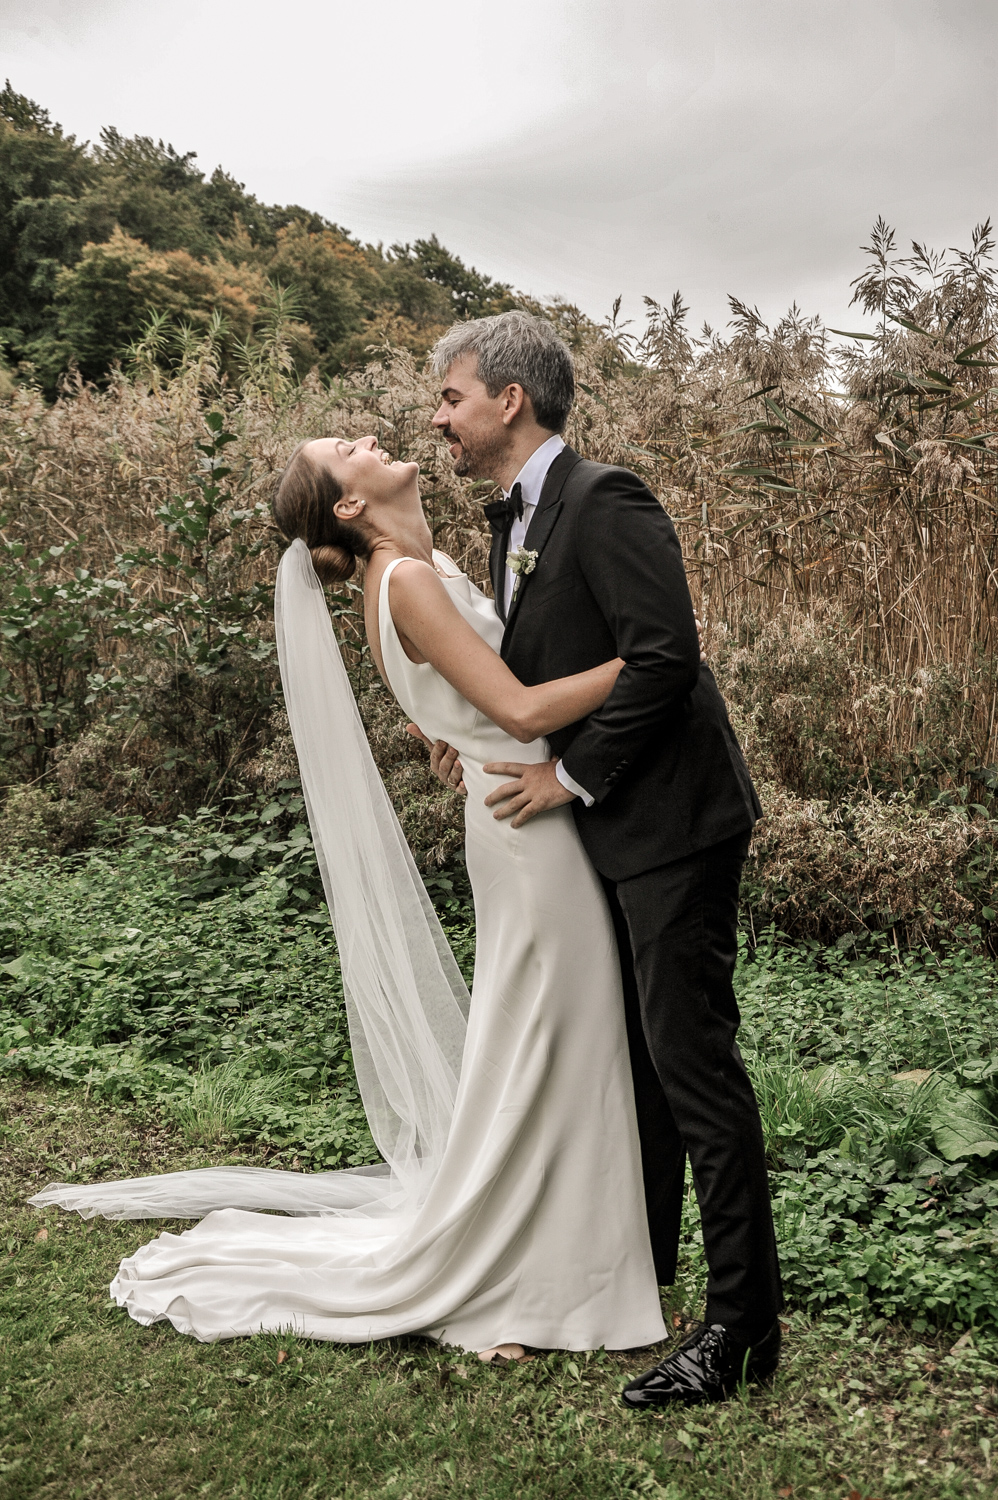 En god bryllupsfotograf fanger de vigtige øjeblikke til brylluppet